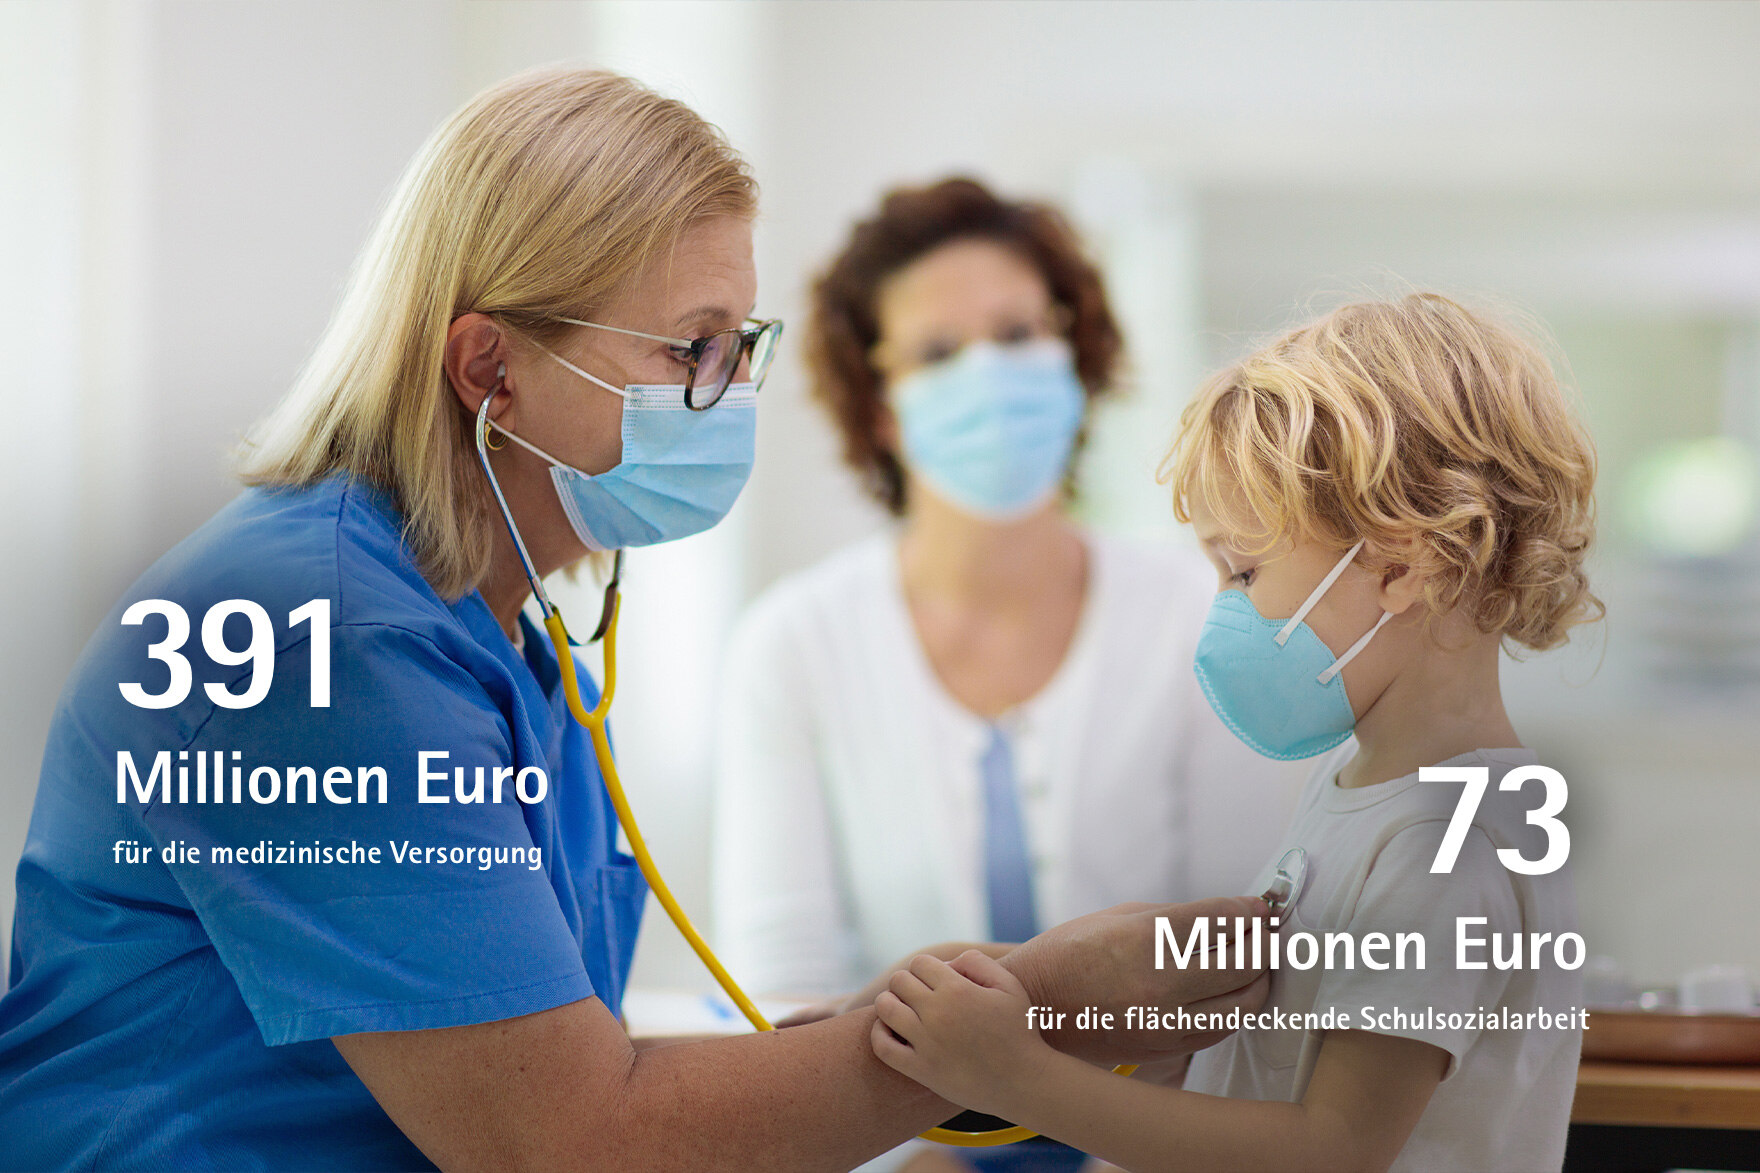 391 Millionen Euro für die medizinische Versorgung, 73 Millionen Euro für die flächendeckende Schulsozialarbeit